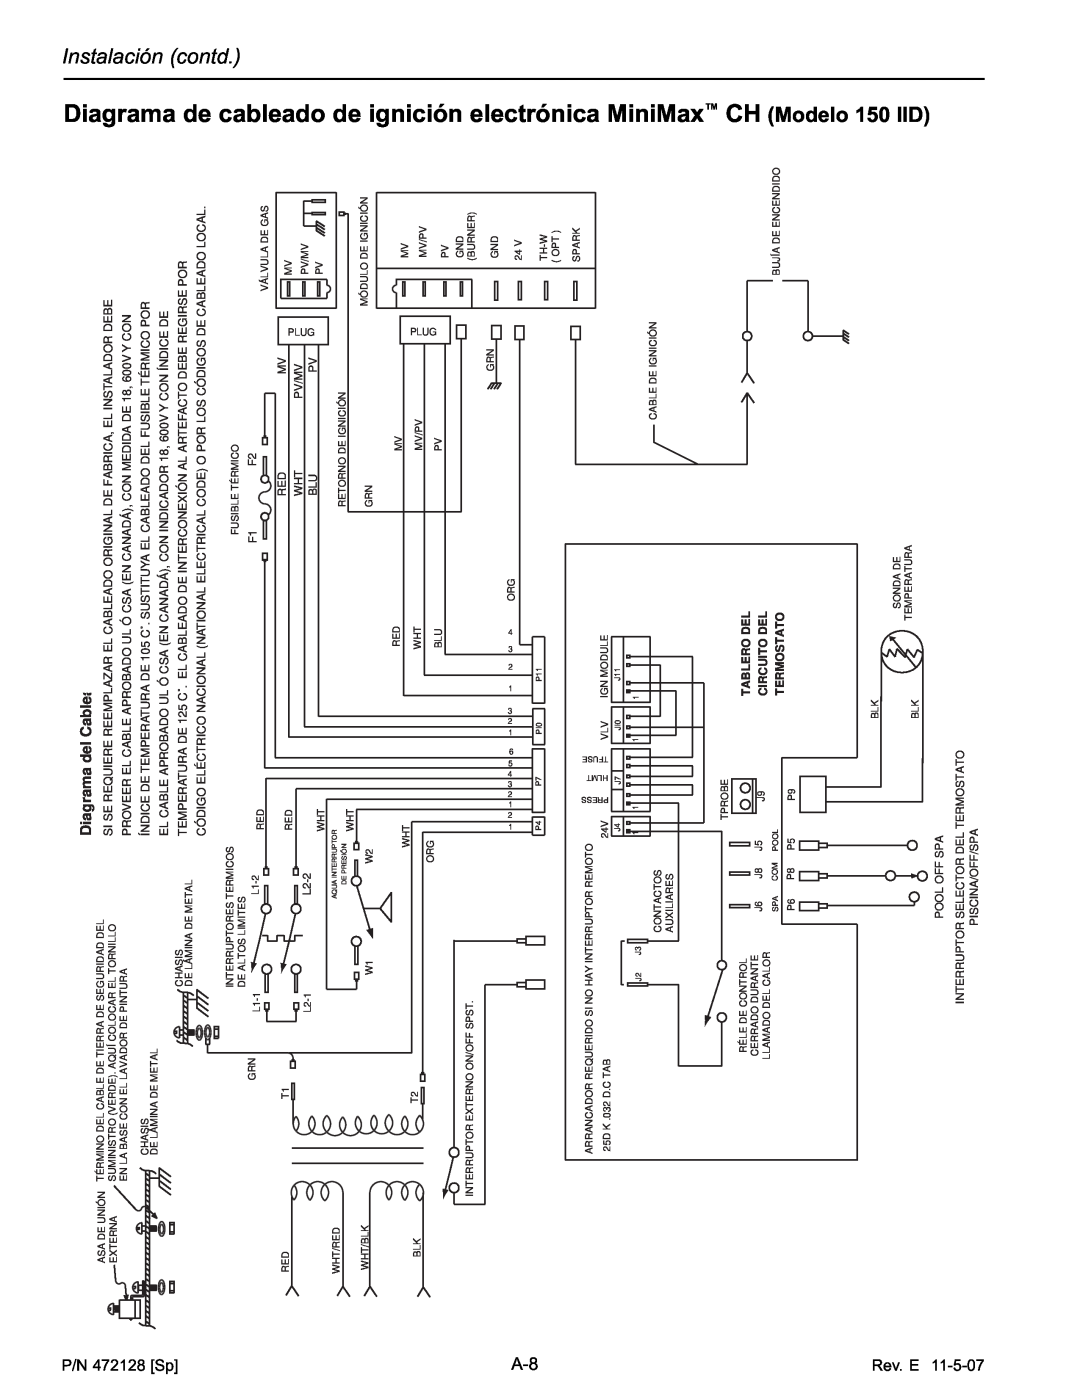 Pentair Hot Tub manual Diagrama de cableado de ignición electrónica MiniMax CH Modelo, 150 IID, 472128 Sp, L2-2 